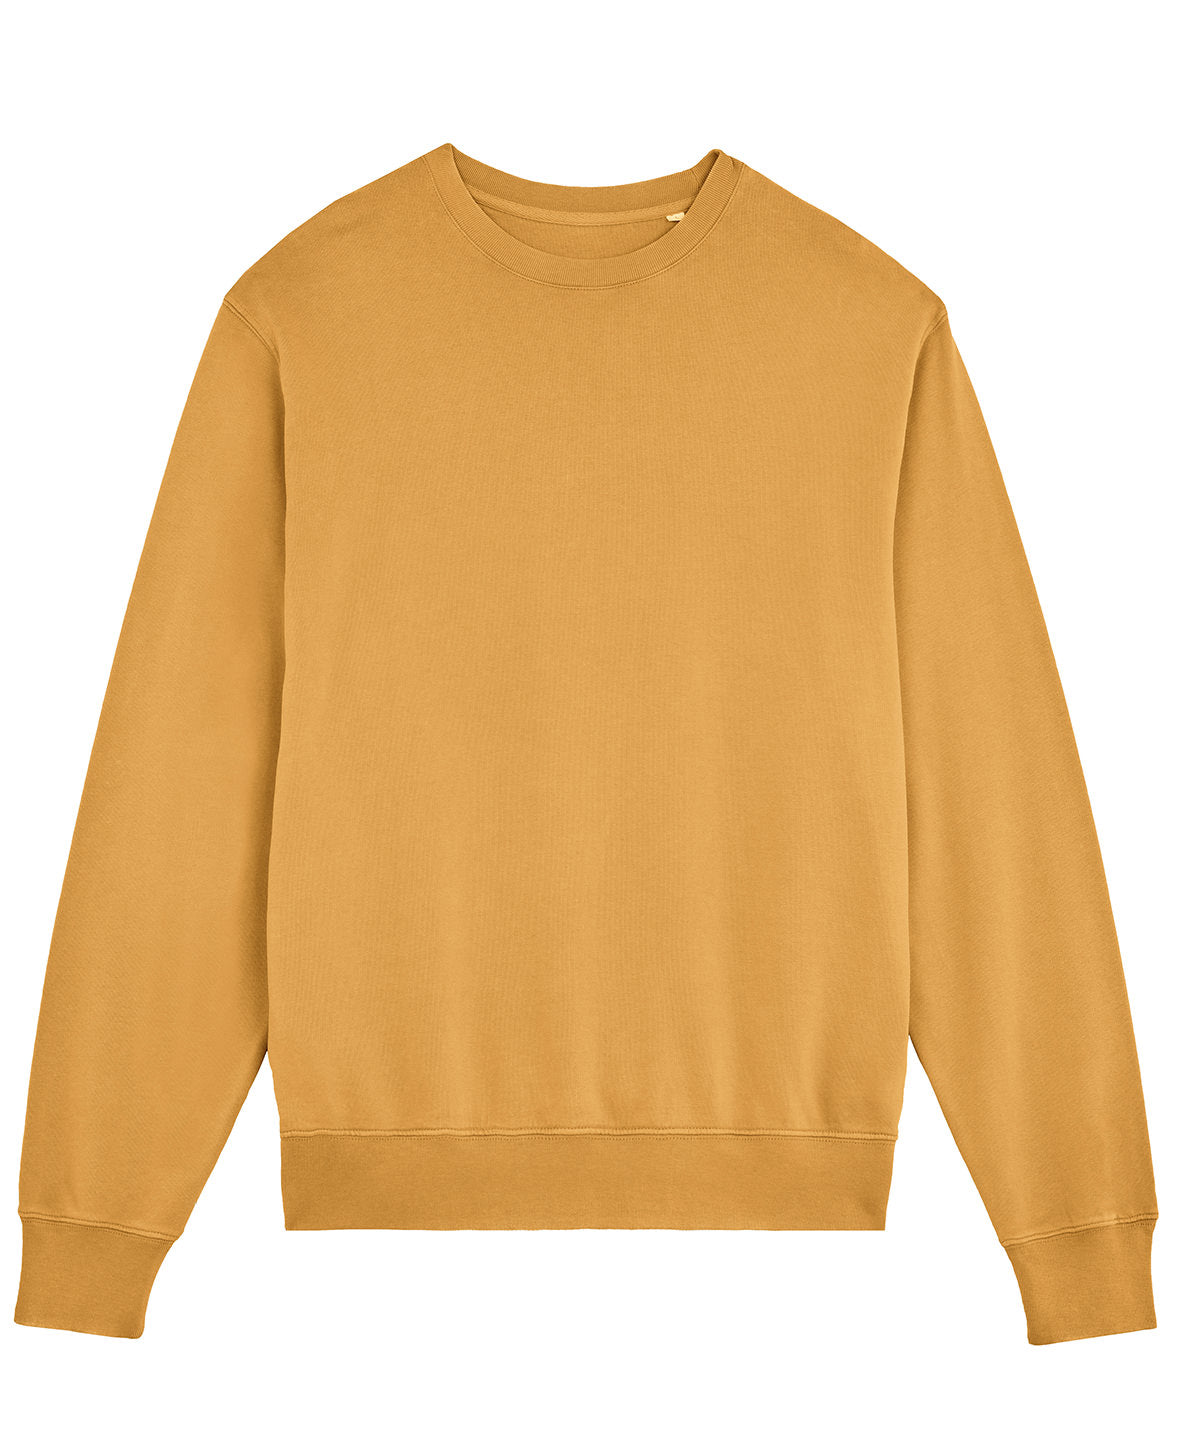 Háskólapeysur - Unisex Matcher Vintage Sweatshirt (STSU085)